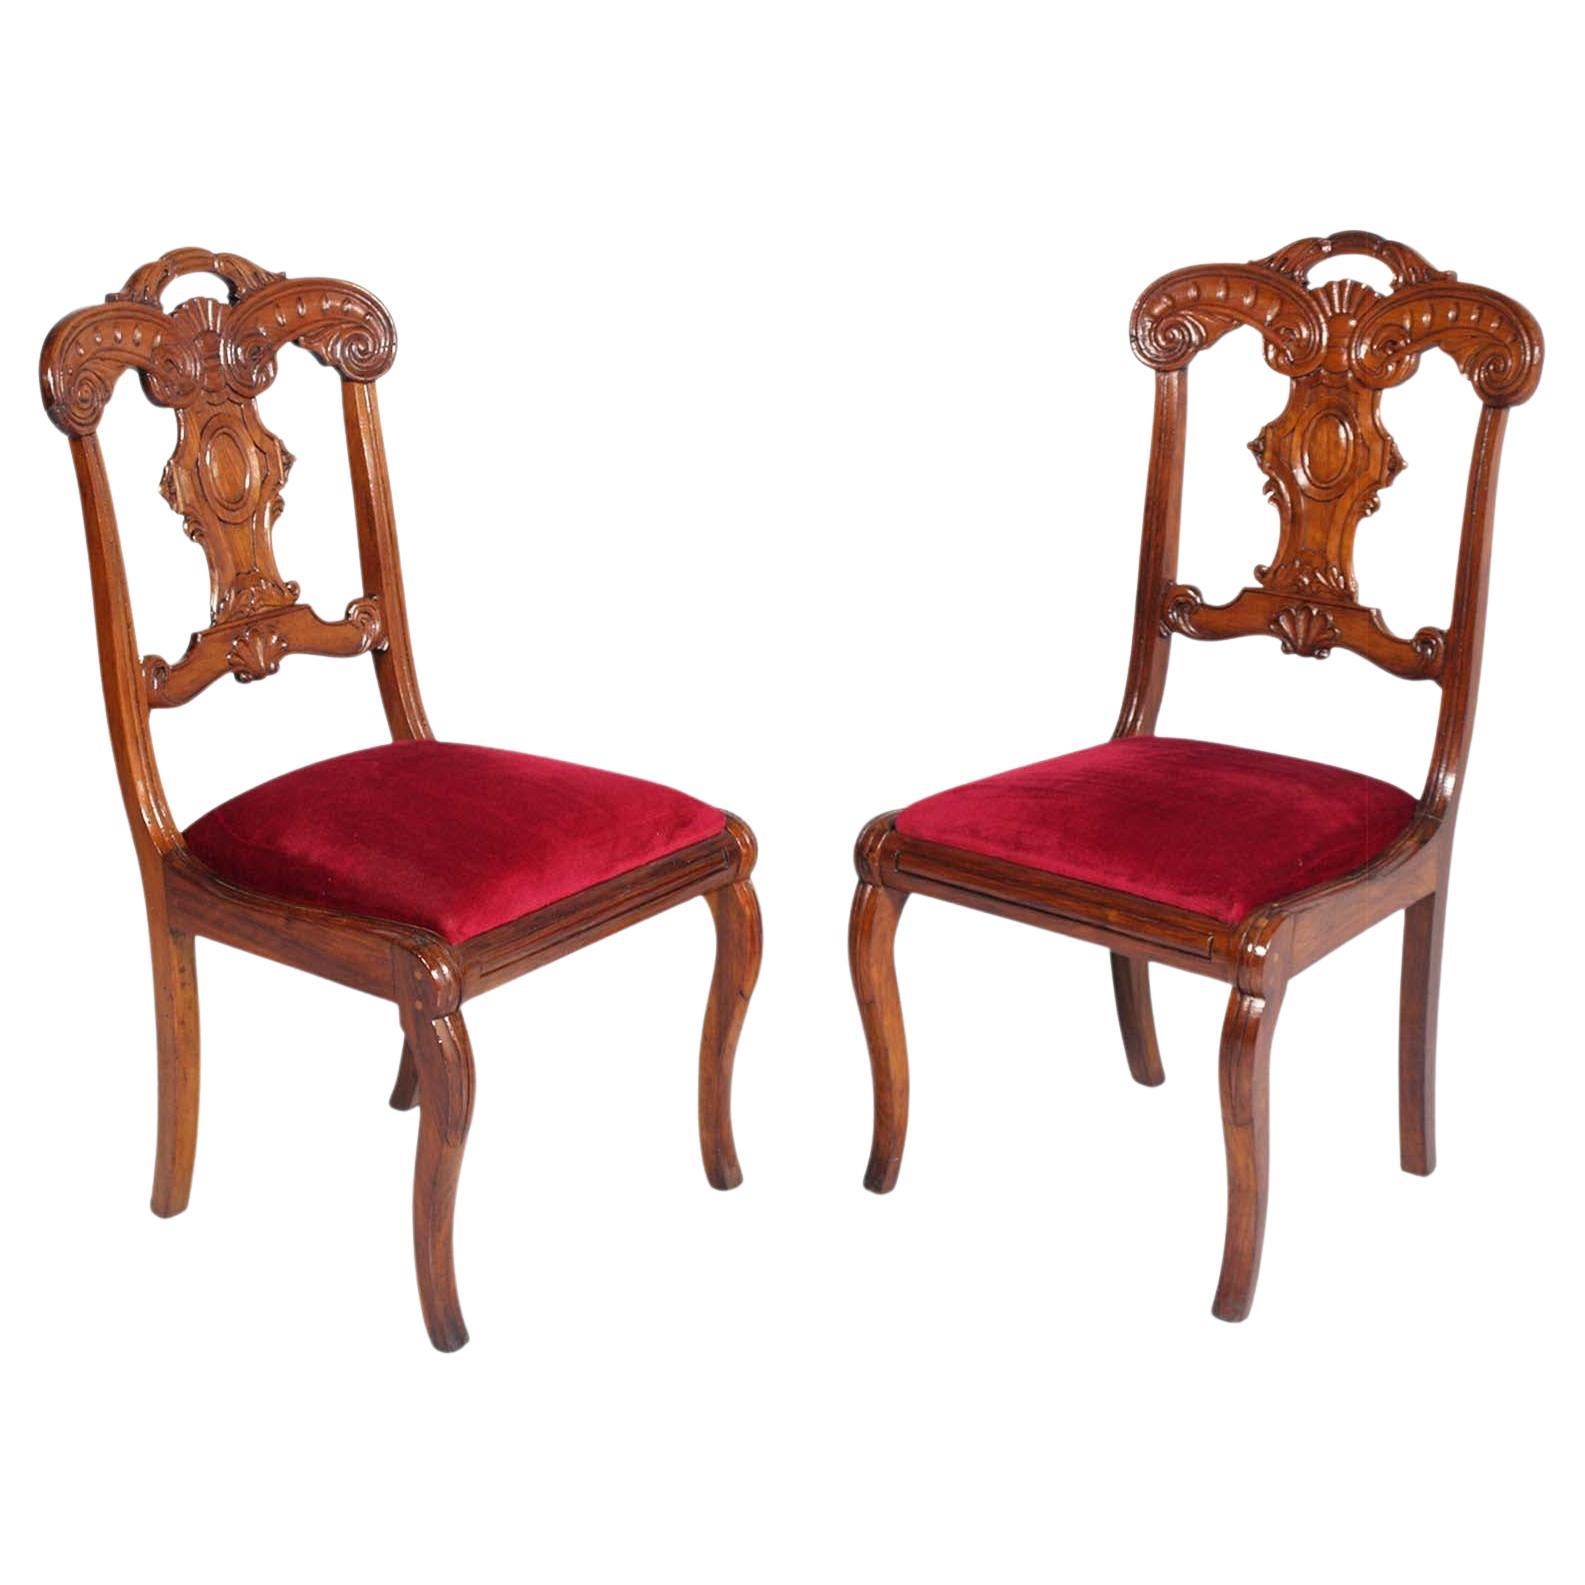 Paar Beistellstühle aus handgeschnitztem Ahornholz, Charles X., Frankreich, frühes 18. Jahrhundert